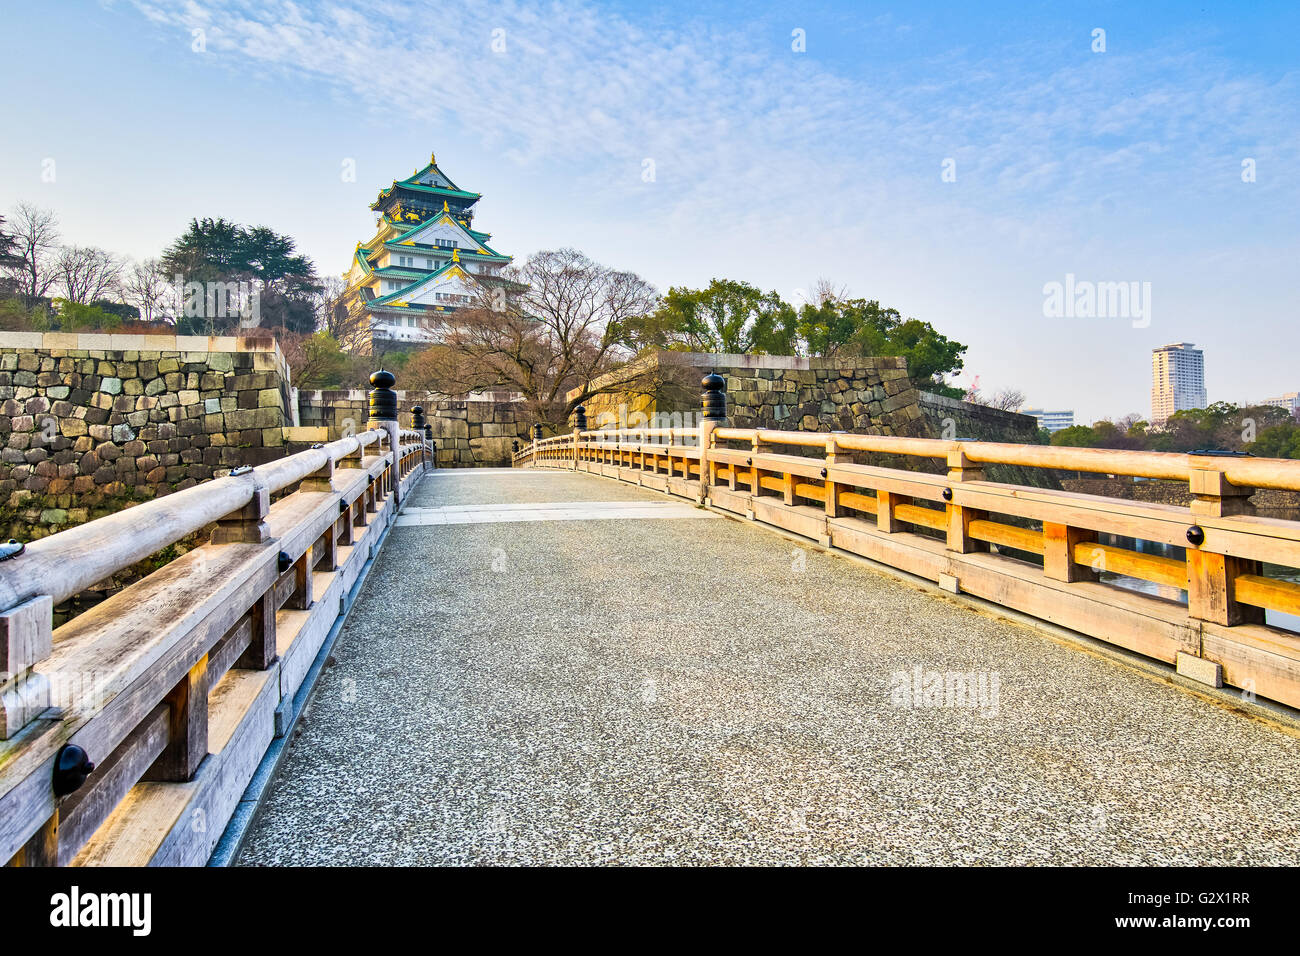 Osaka, Giappone - 5 Gennaio 2016: il Castello di Osaka è un castello giapponese in Chuo-ku Osaka in Giappone. Il castello è uno del Giappone più famou Foto Stock